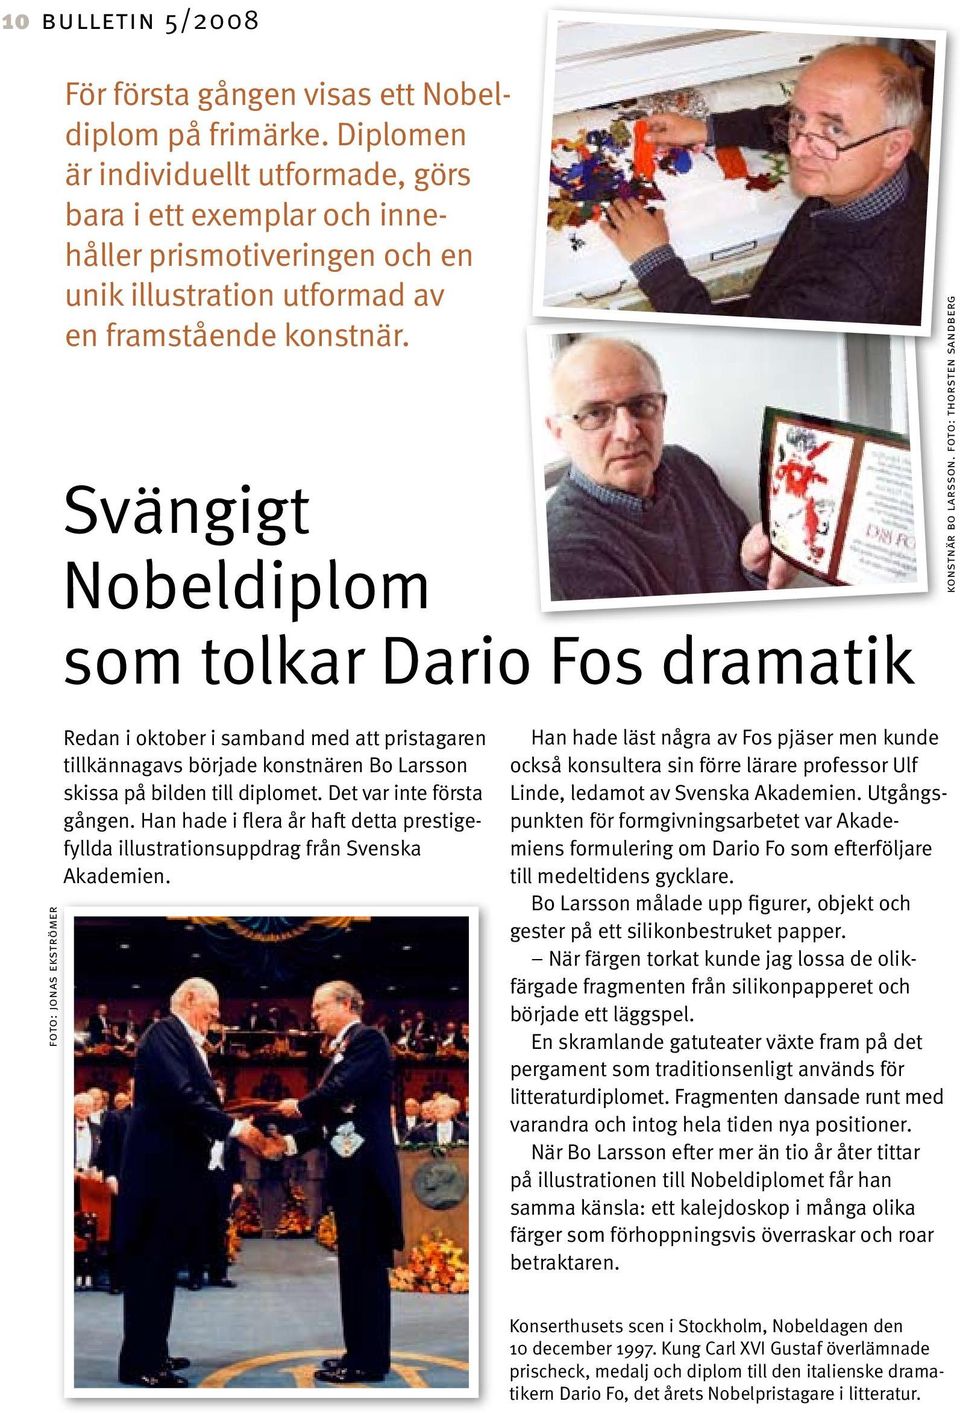 Svängigt Nobeldiplom som tolkar Dario Fos dramatik konstnär bo larsson.